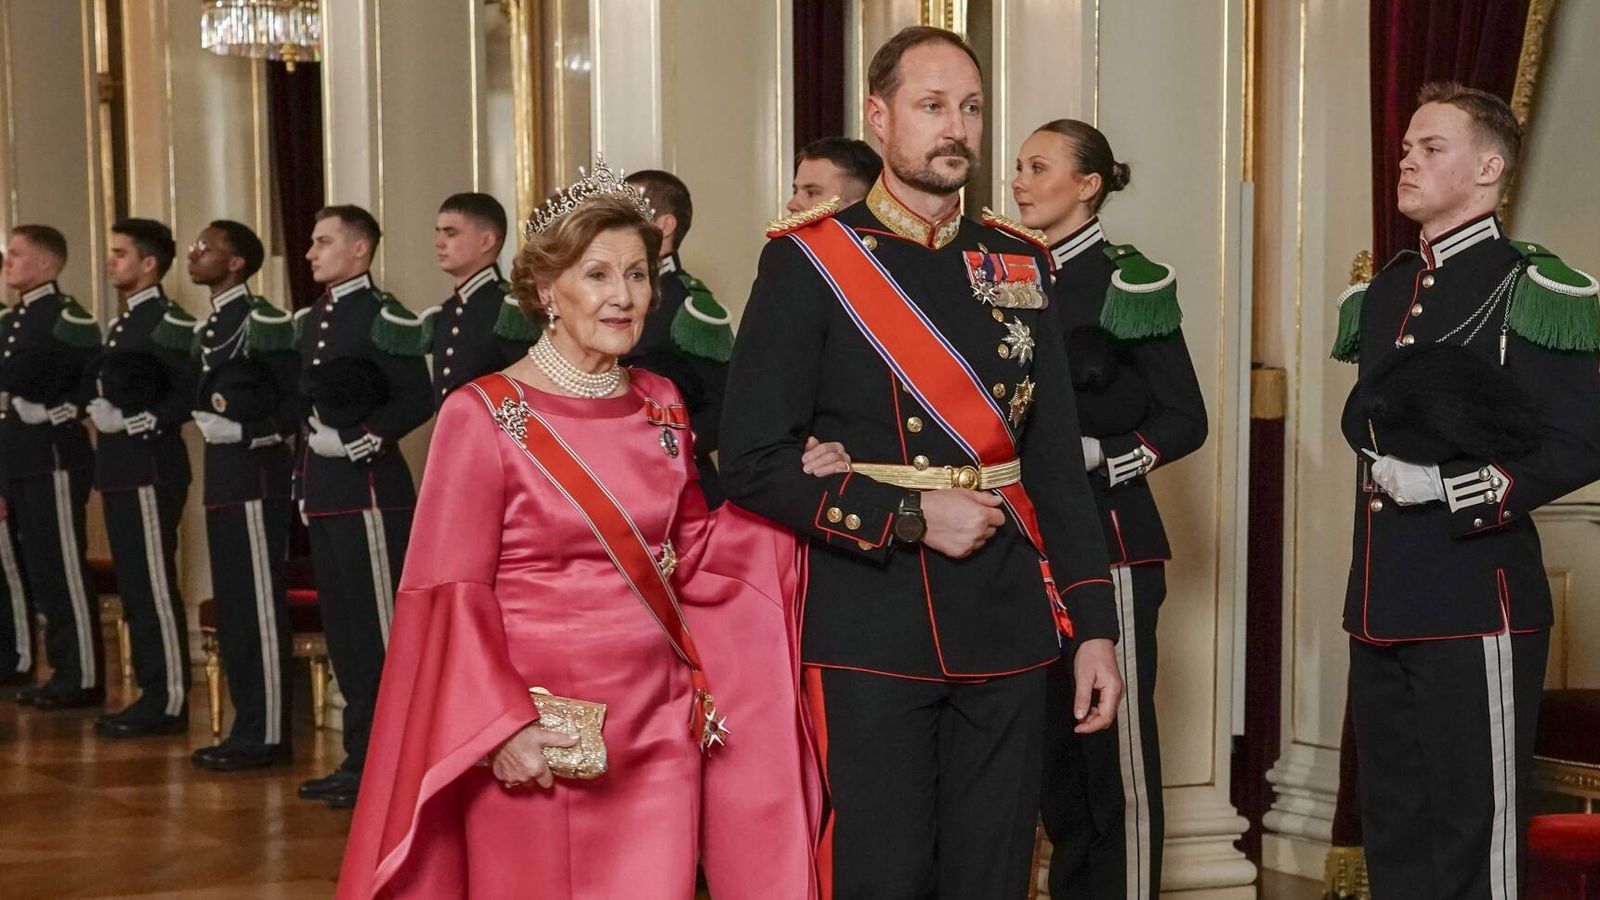 un vestido con diez años de historia y dos tiaras que provocan un 'déjà vu': cena de gala en noruega